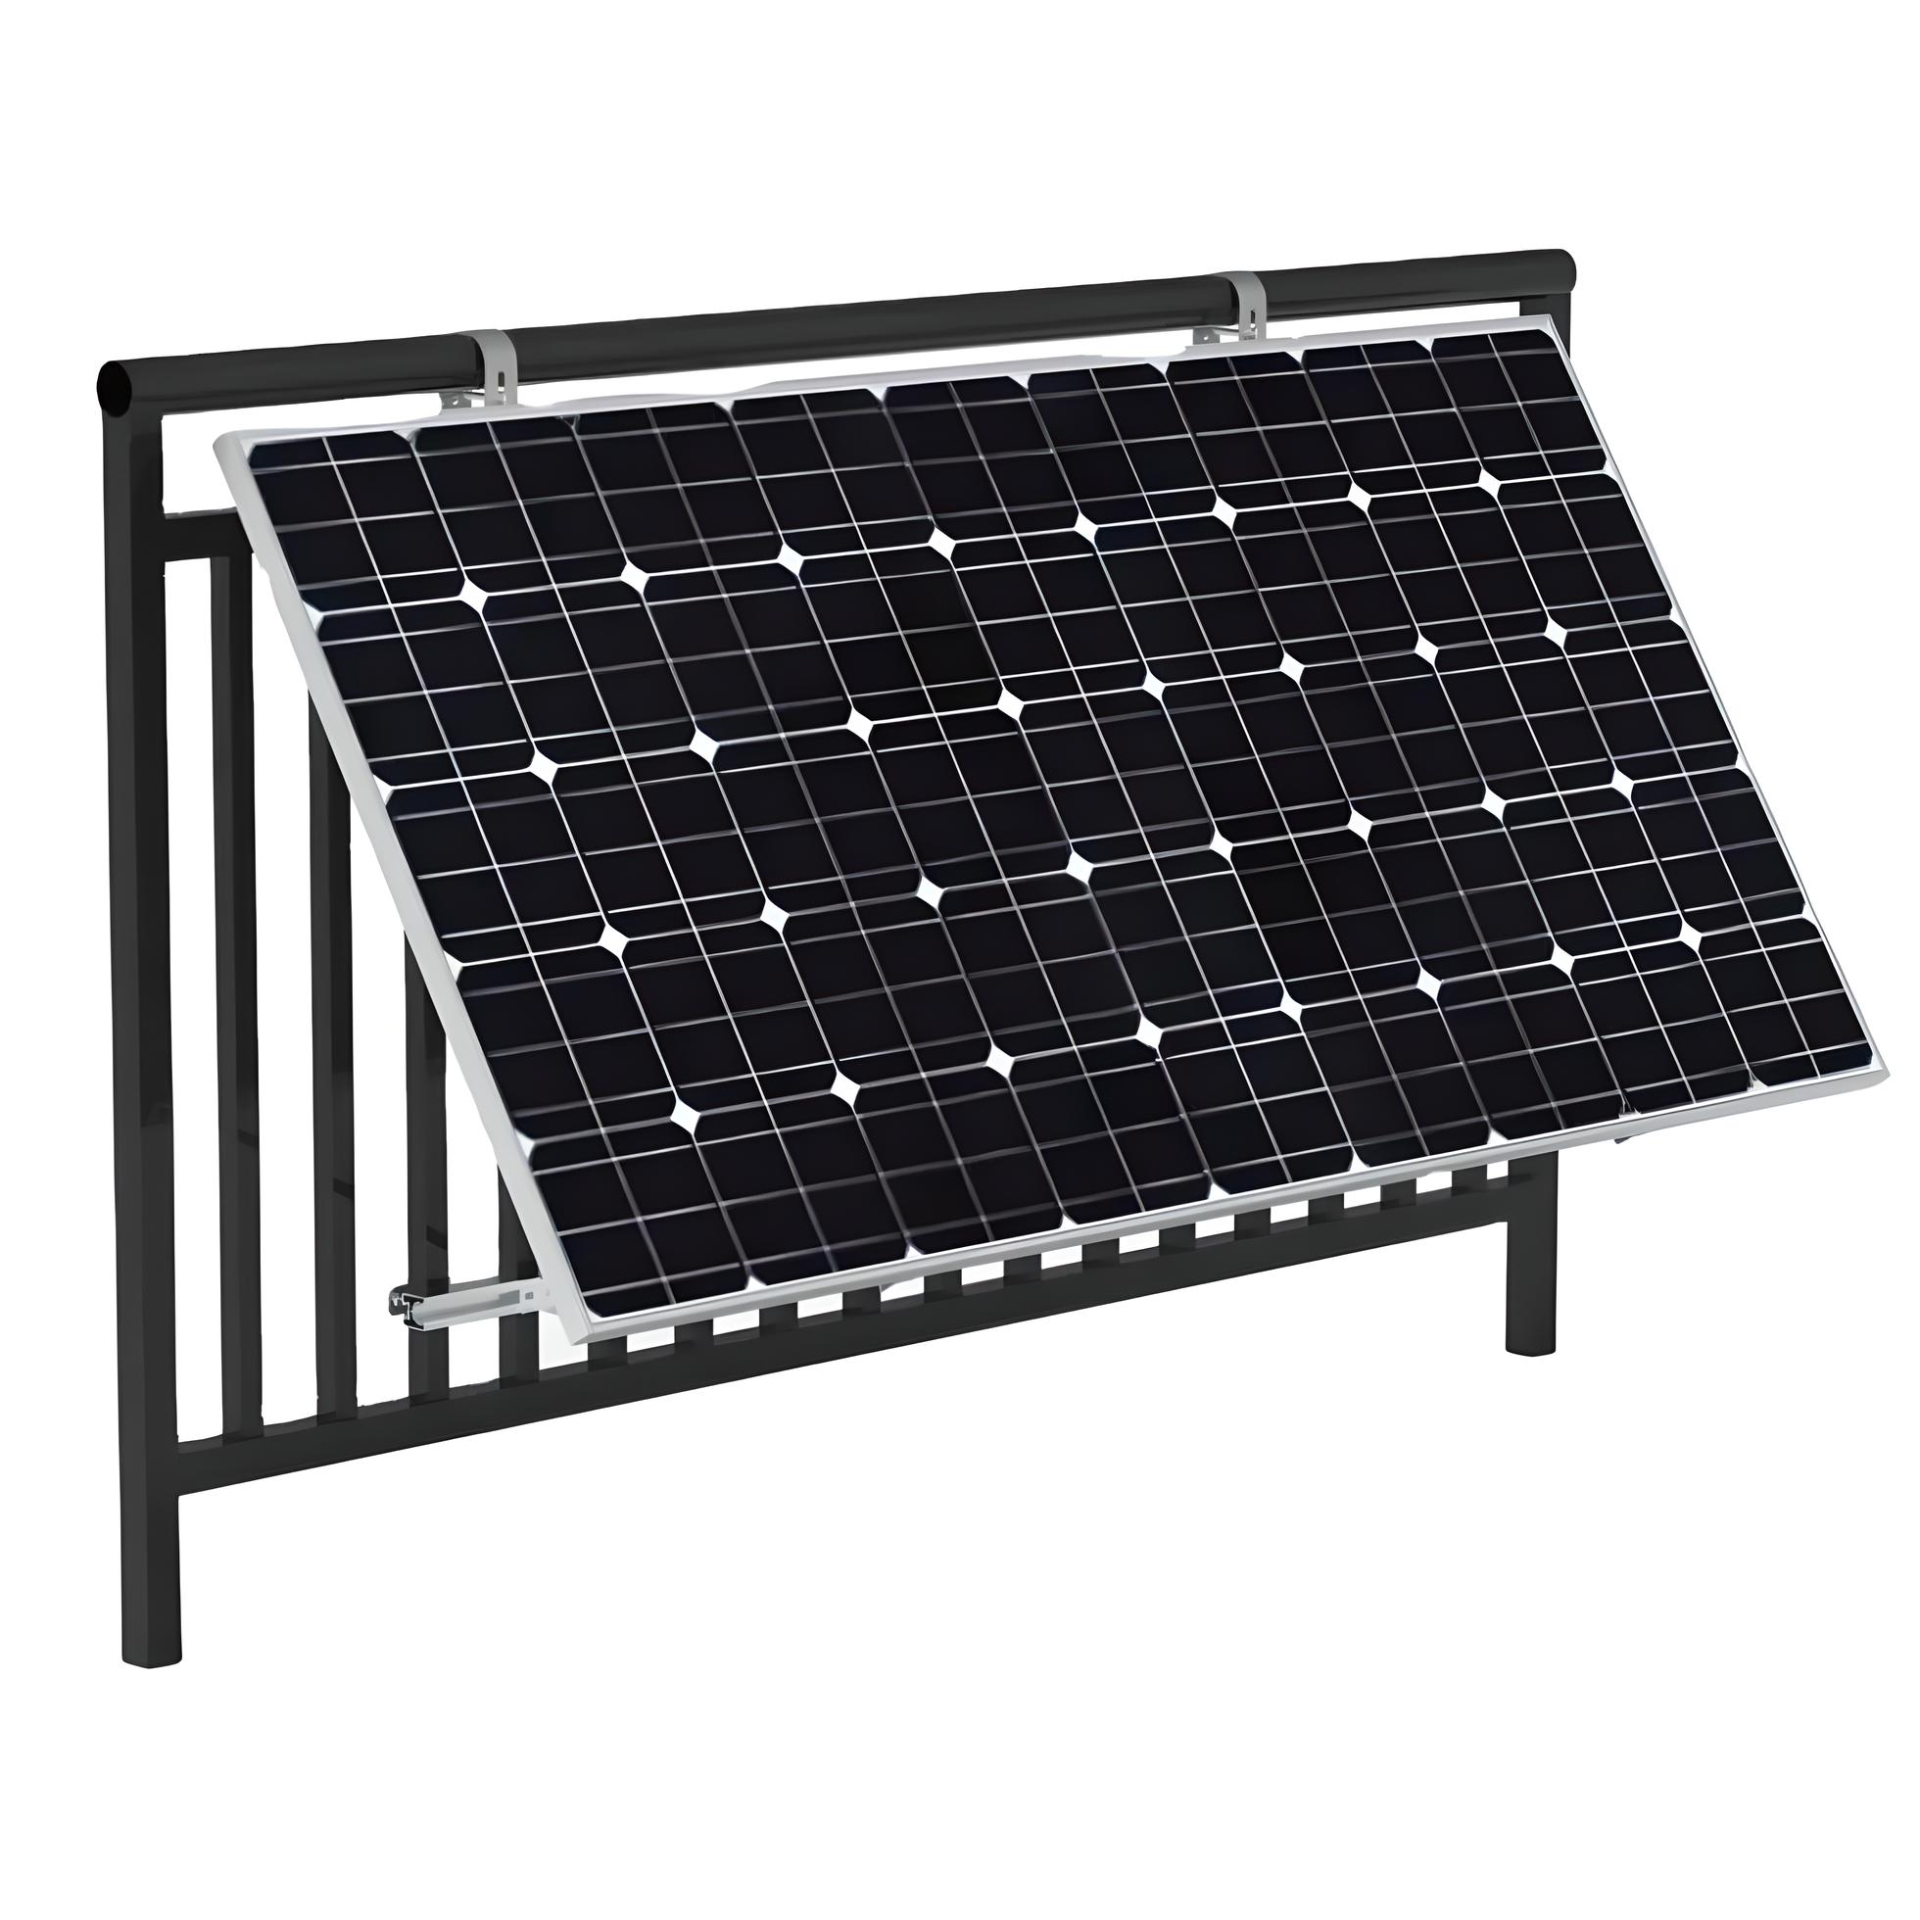 TZIPower Balkon Eckhaken Halterung Befestigung Solar Halterungs-Set mit Solarmodul